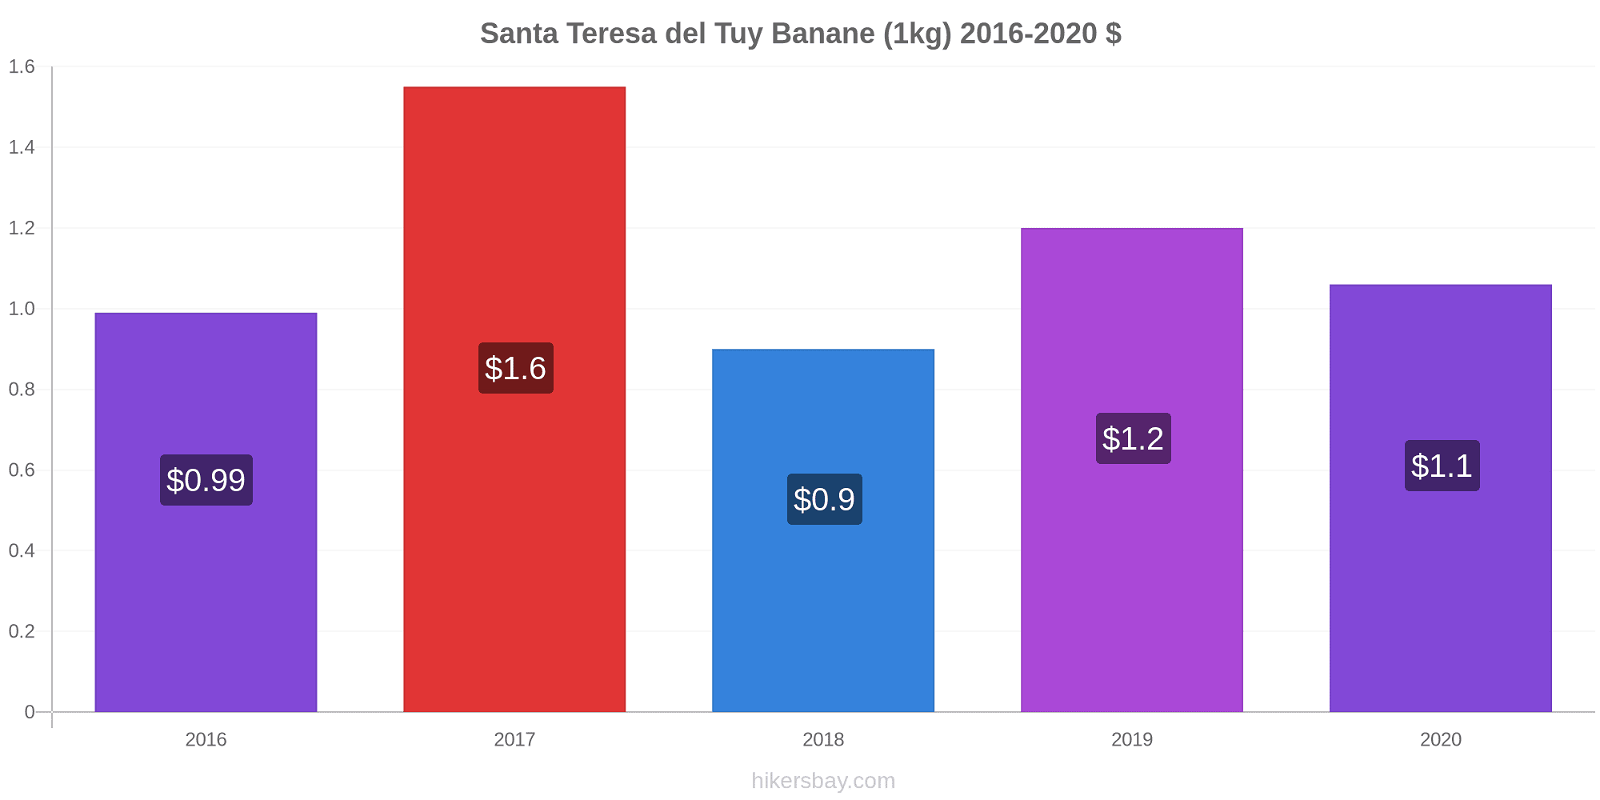 Santa Teresa del Tuy variazioni di prezzo Banana (1kg) hikersbay.com